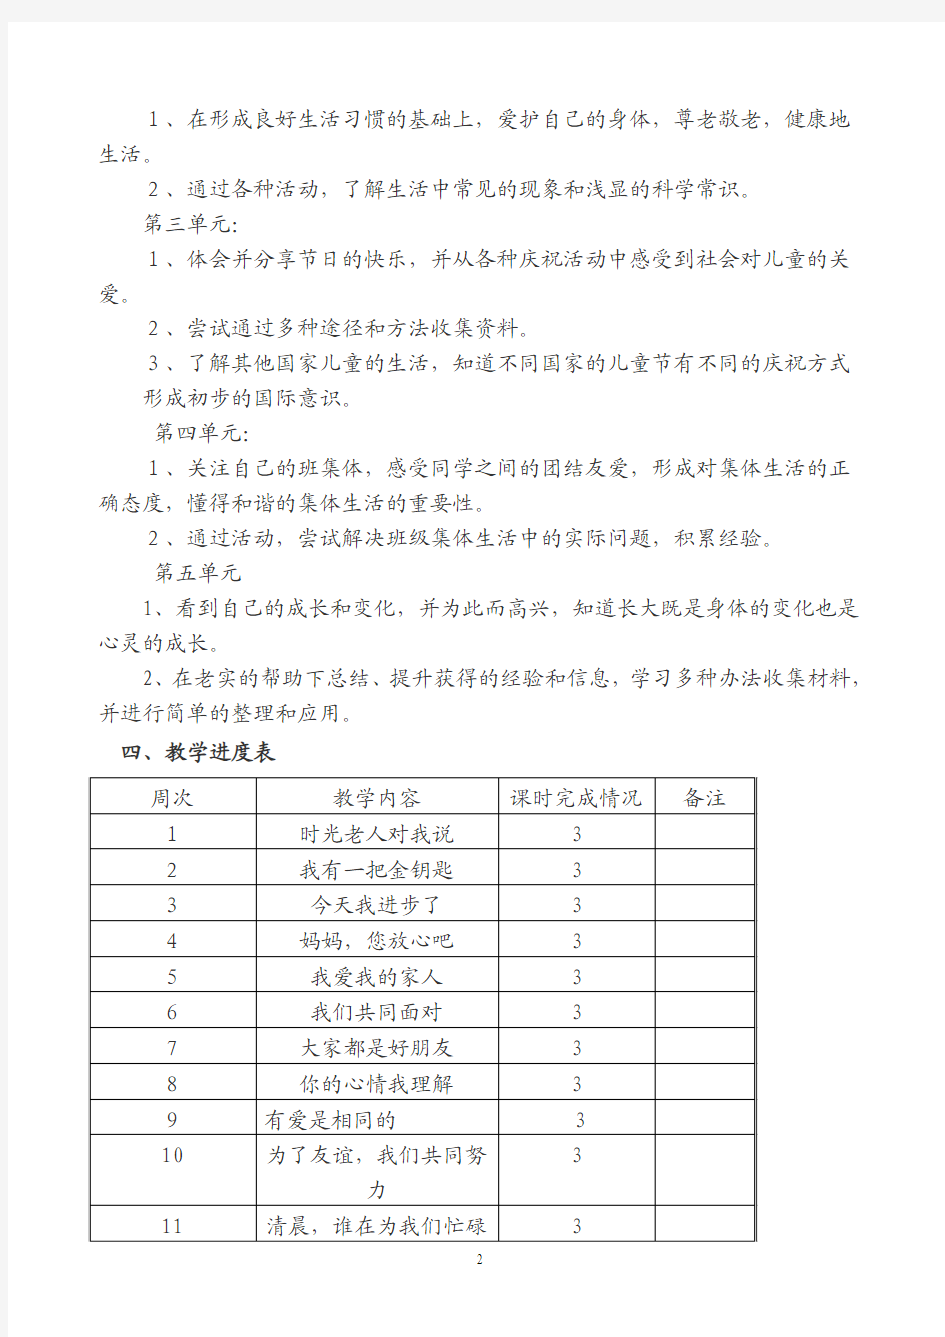 张维小学2013年三年级春季学期品德与社会